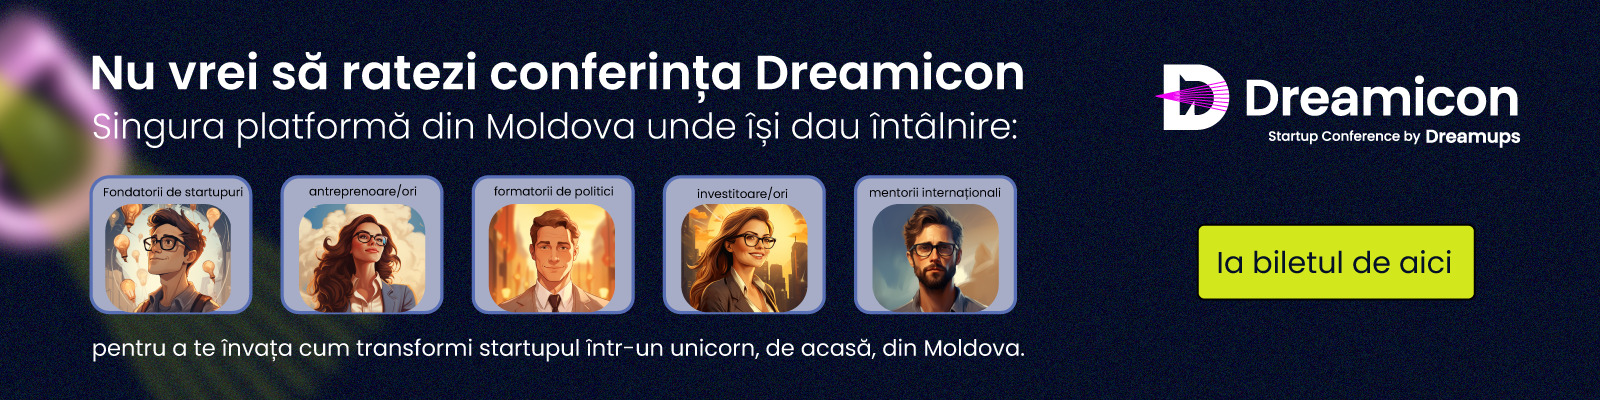 Dreamicon by Dreamups 2023: Mai mult decât o conferință - meeting pointul pentru investitori, mentori internaționali și start-up-urile care doresc scalare